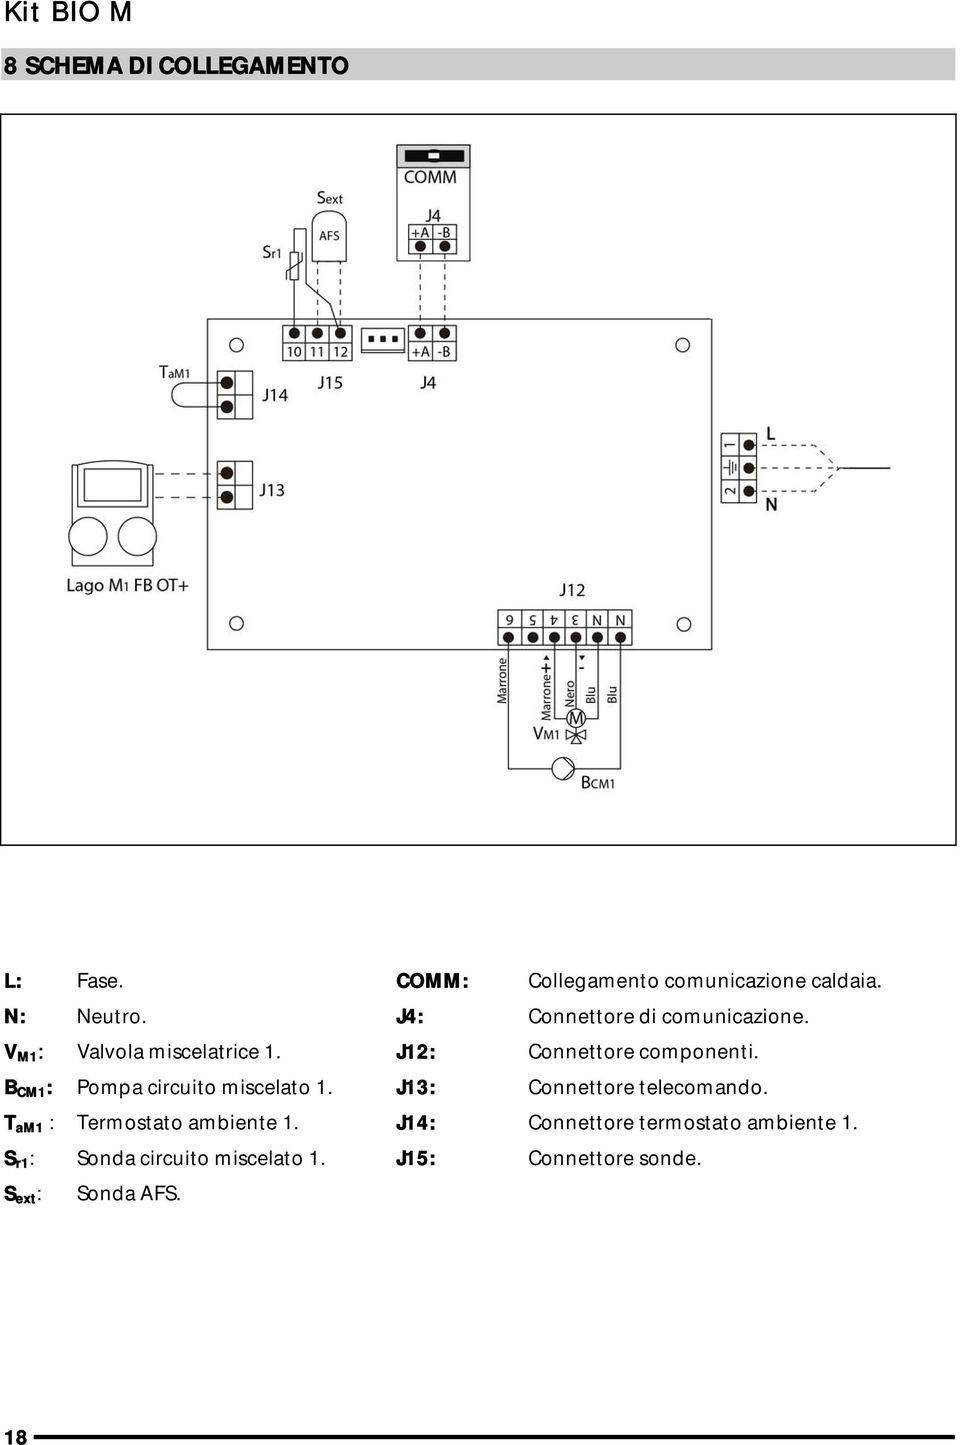 B CM1 : Pompa circuito miscelato 1. J13: Connettore telecomando. T am1 : Termostato ambiente 1.